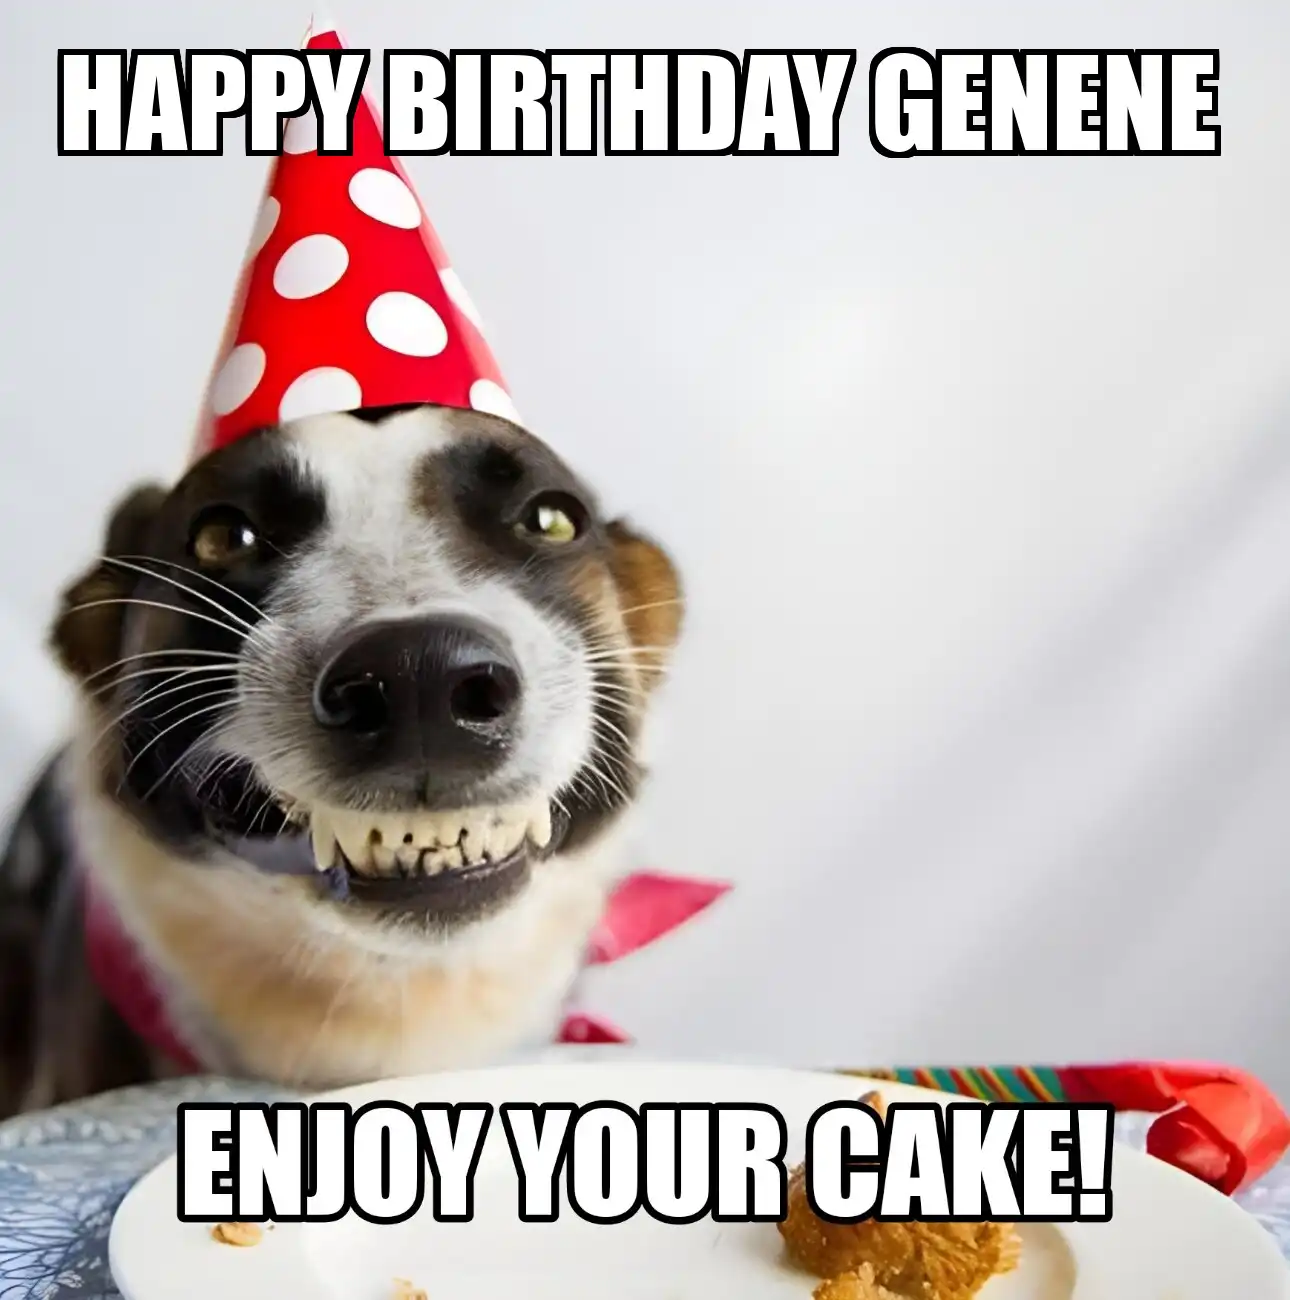 Happy Birthday Genene Enjoy Your Cake Dog Meme